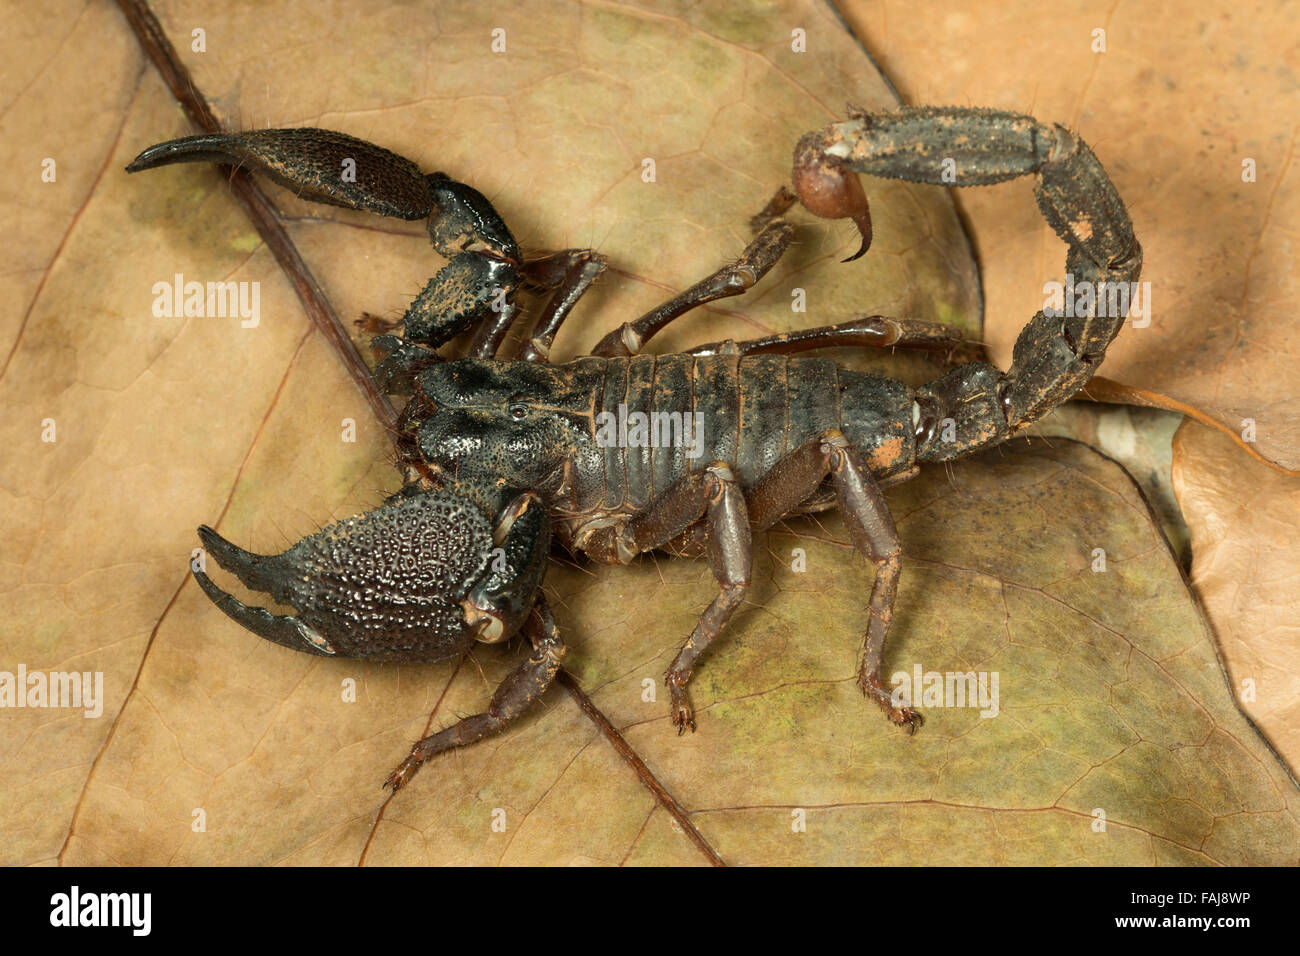 Burrowing scorpion, Heterometrus phipsoni, Aarey Milk Colony, India Stock Photo